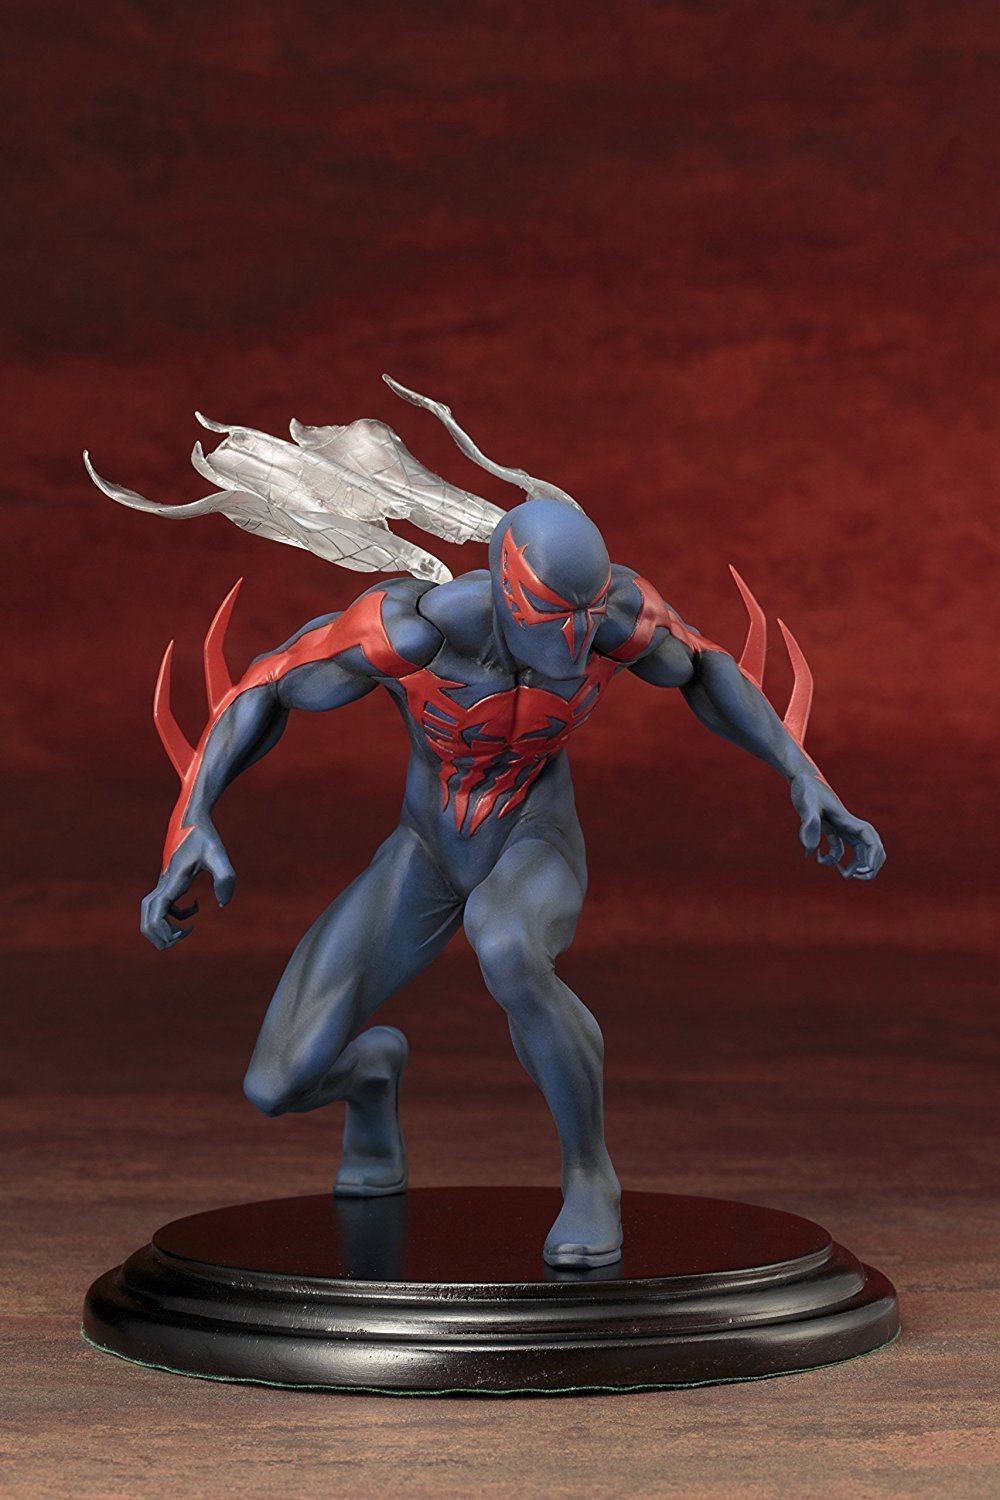 Kotobukiya Marvel Now! Spider-Man 2099 Artfx+ statue - Nerd Arena